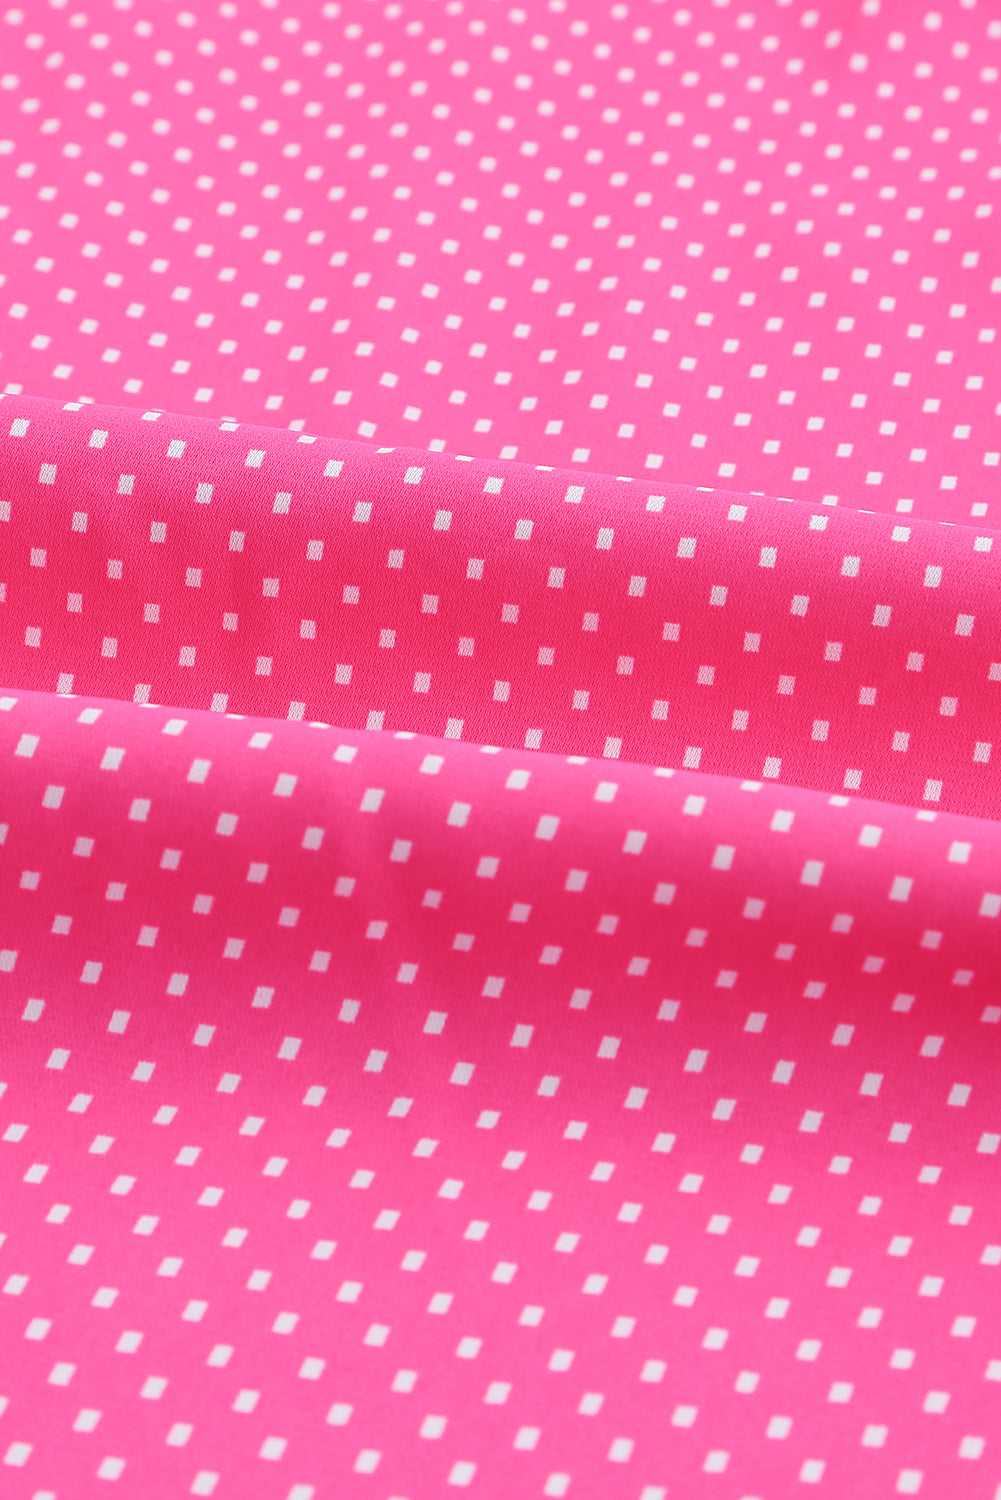 Rožnata ohlapna srajca s 3/4 rokavi in ​​pikčastim potiskom